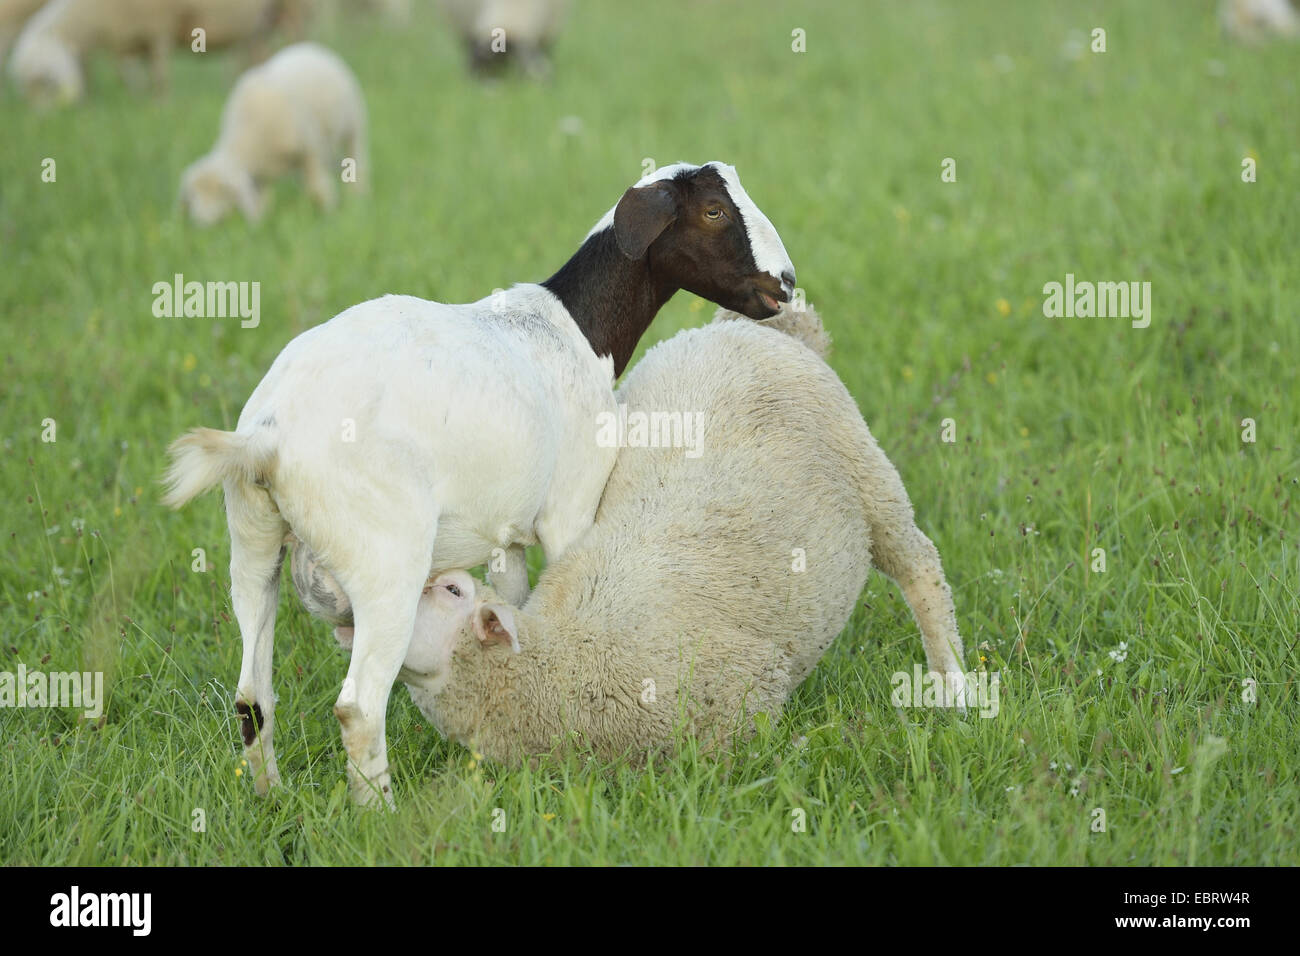 Cabra Boer (Capra hircus, Capra aegagrus hircus. f), ovinos (Ovis aries) muerde desde una cabra Boer en una pradera, Alemania, Baviera Foto de stock